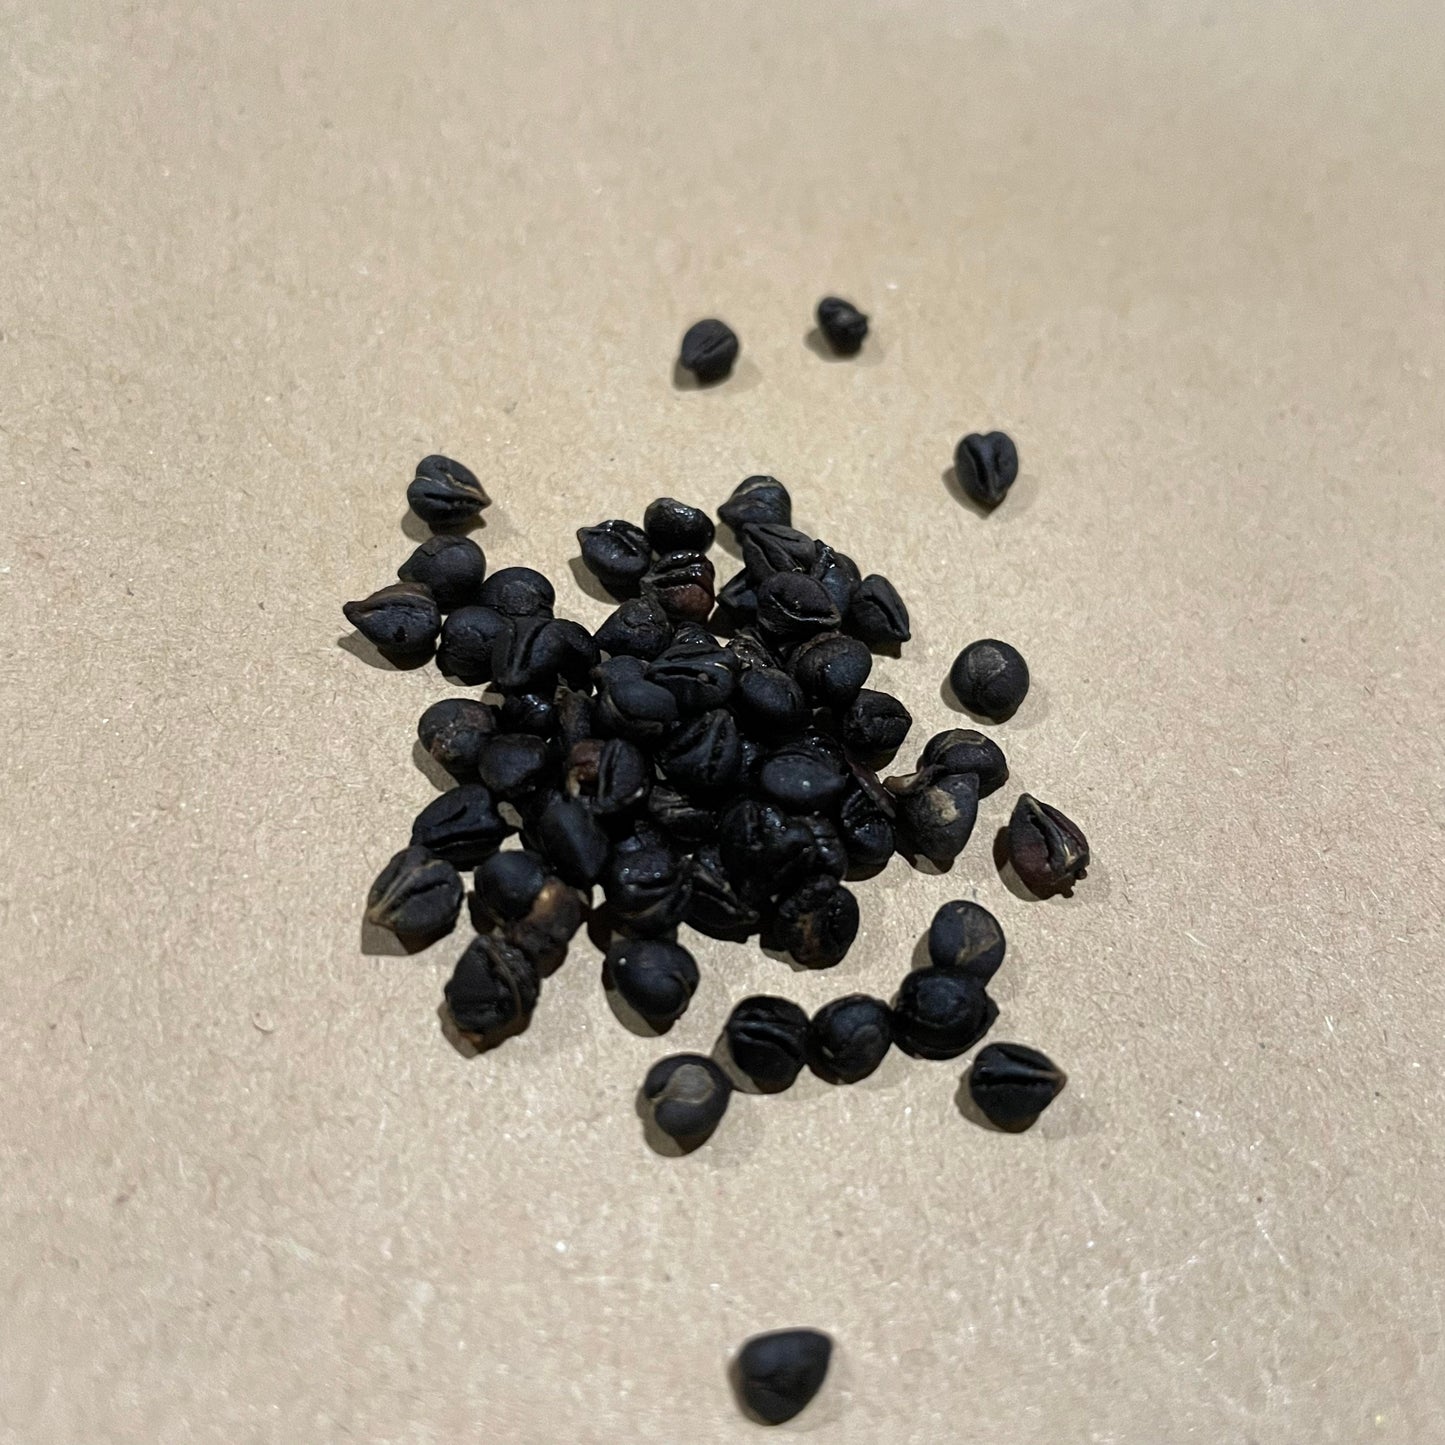 Virginia Creeper Seeds - (Parthenocissus quinquefolia) - 100+ Seeds